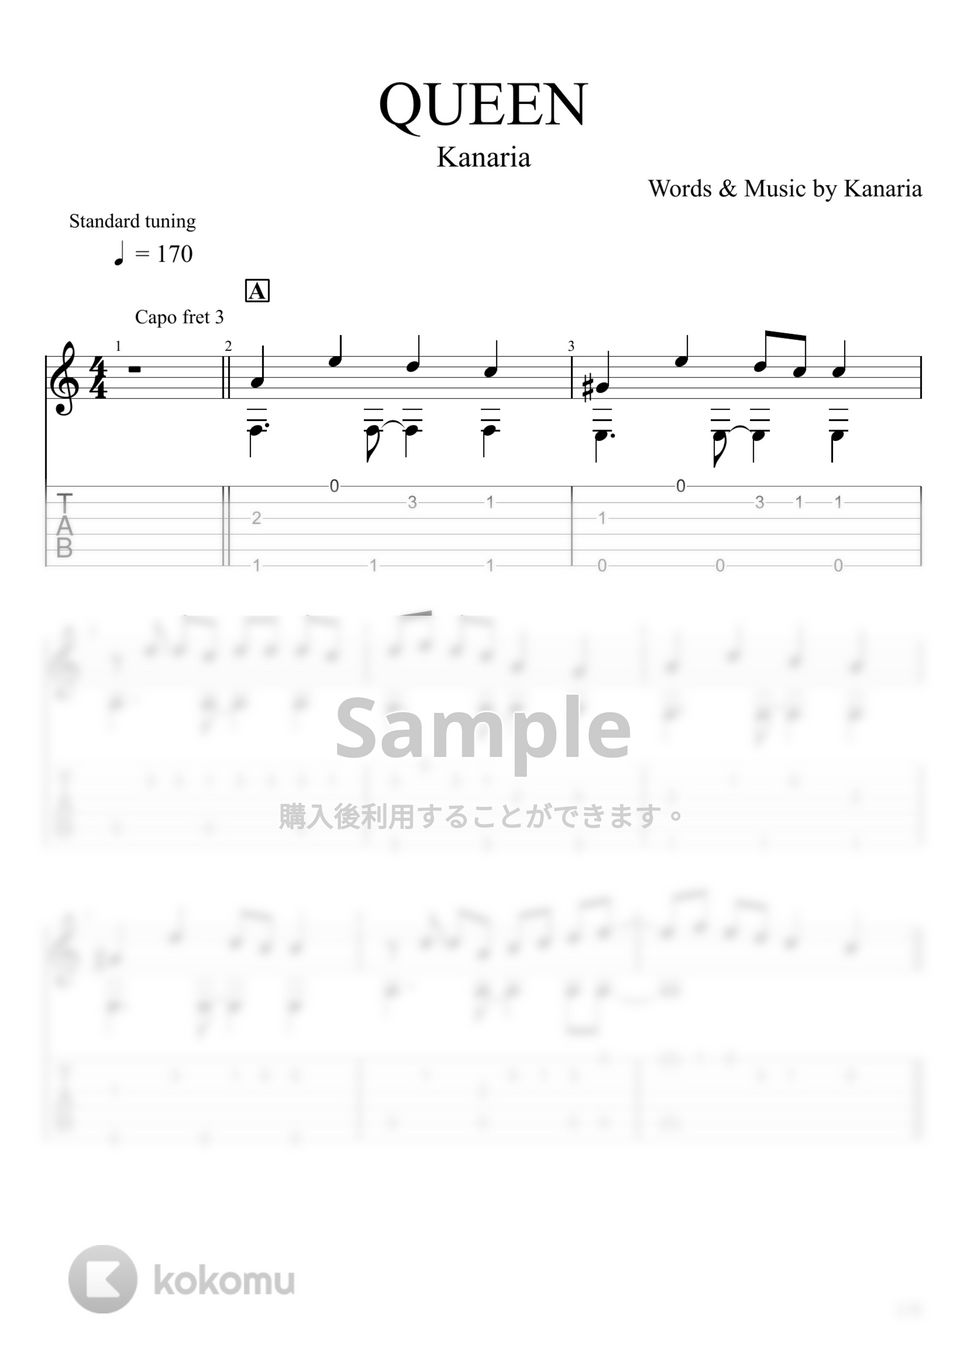 Kanaria - QUEEN (ソロギター) by u3danchou